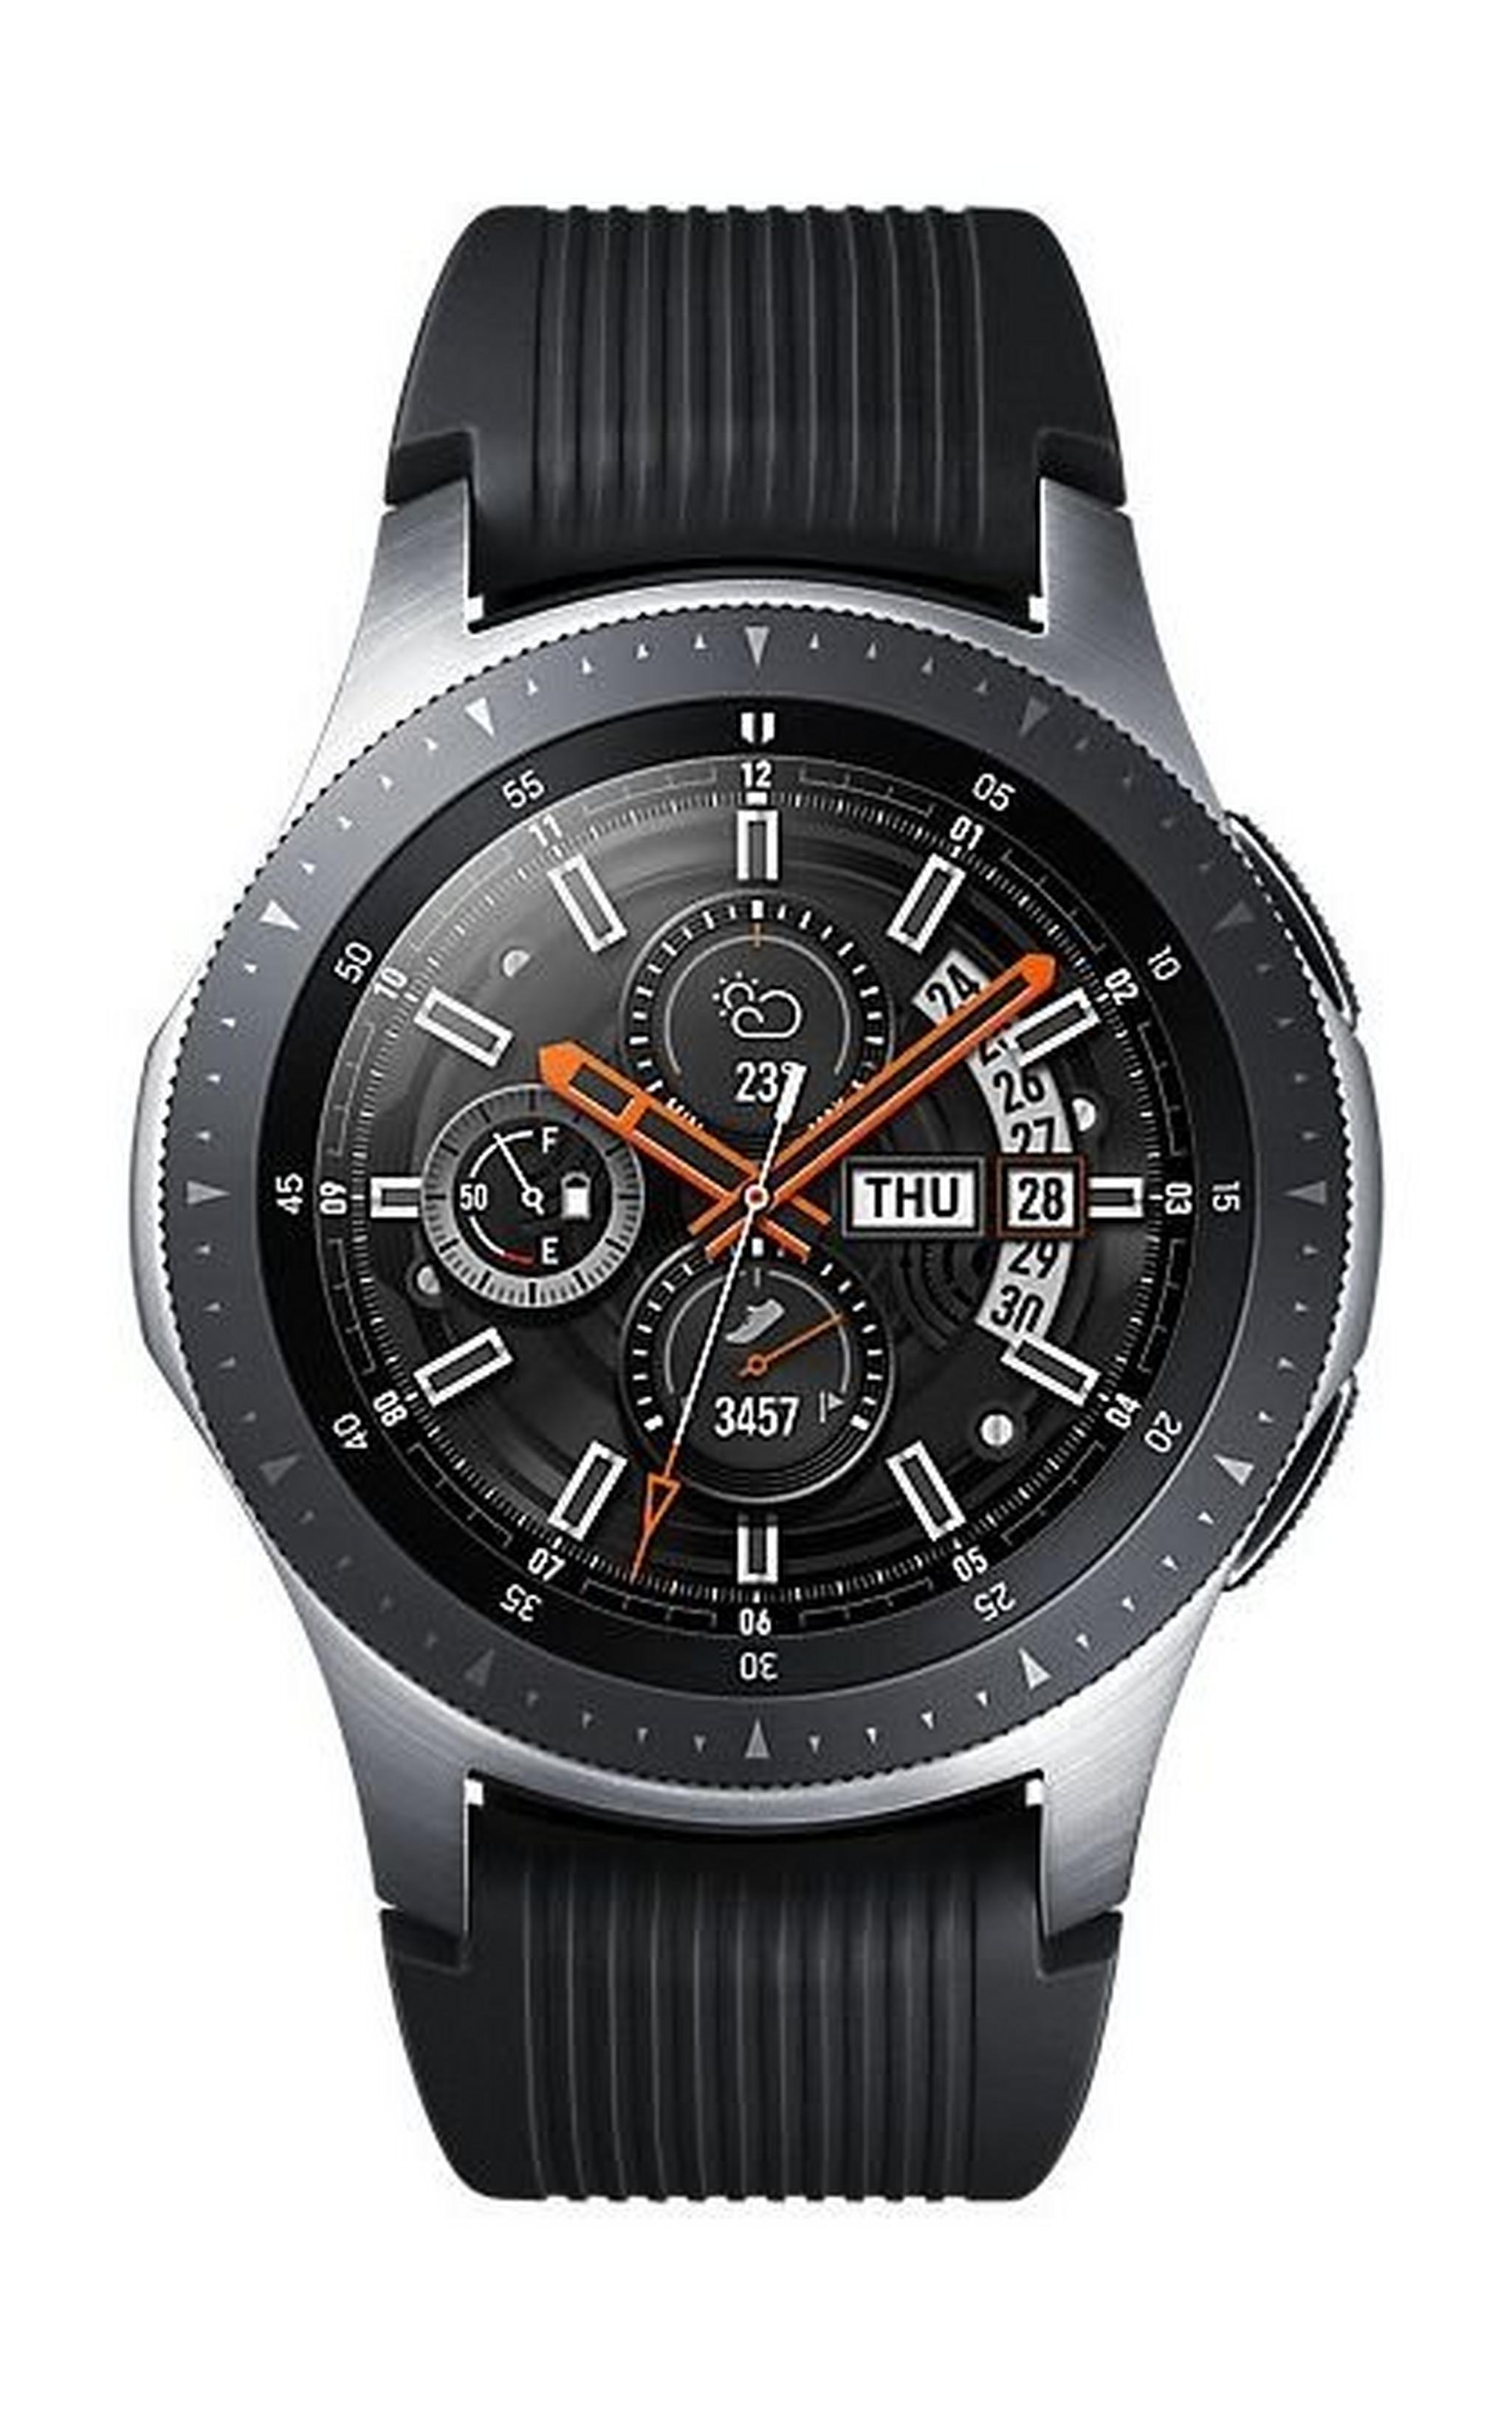 Samsung Galaxy Watch 46mm - Black/Silver